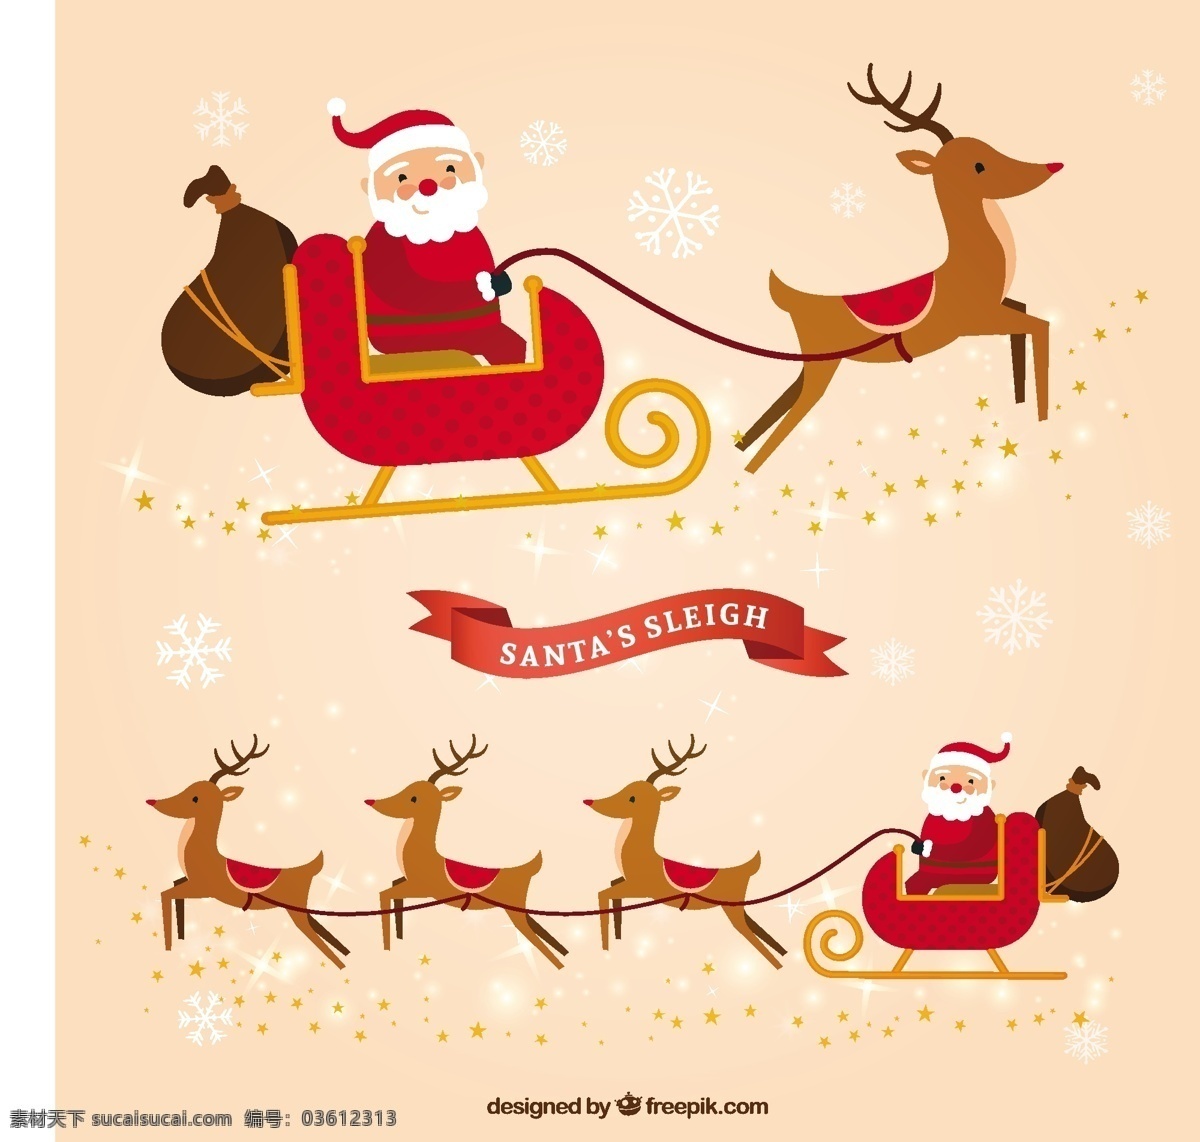 圣 塔克 劳斯 雪橇 扁平 封装 圣诞节 圣诞快乐 冬天快乐 圣诞老人 克劳斯 平 圣诞庆典 父亲的节日 节日快乐 包 季节 节日 快乐 十二月 圣诞鹿 白色